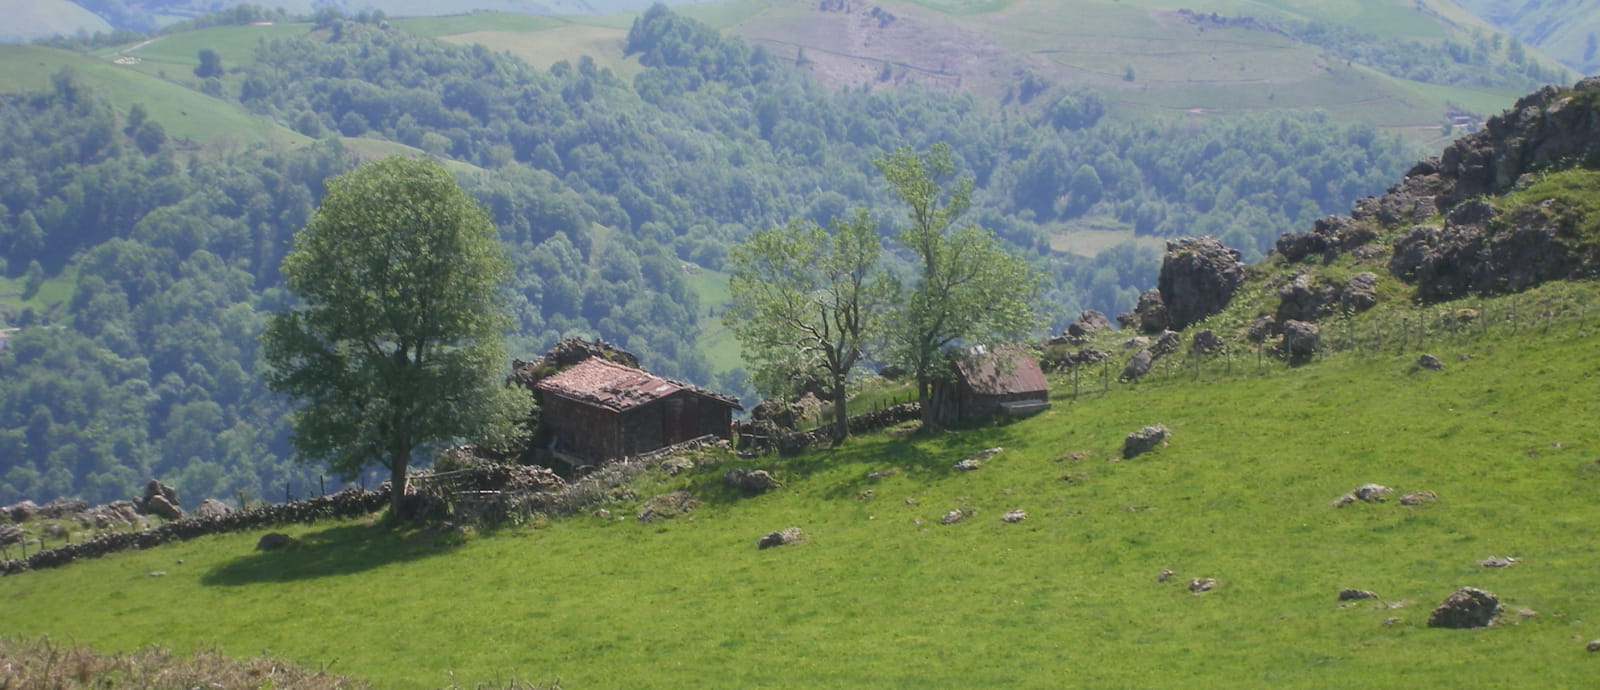 cayolar (maison de bergers) dans les montagnes au dessus d esterencuby - pays basque